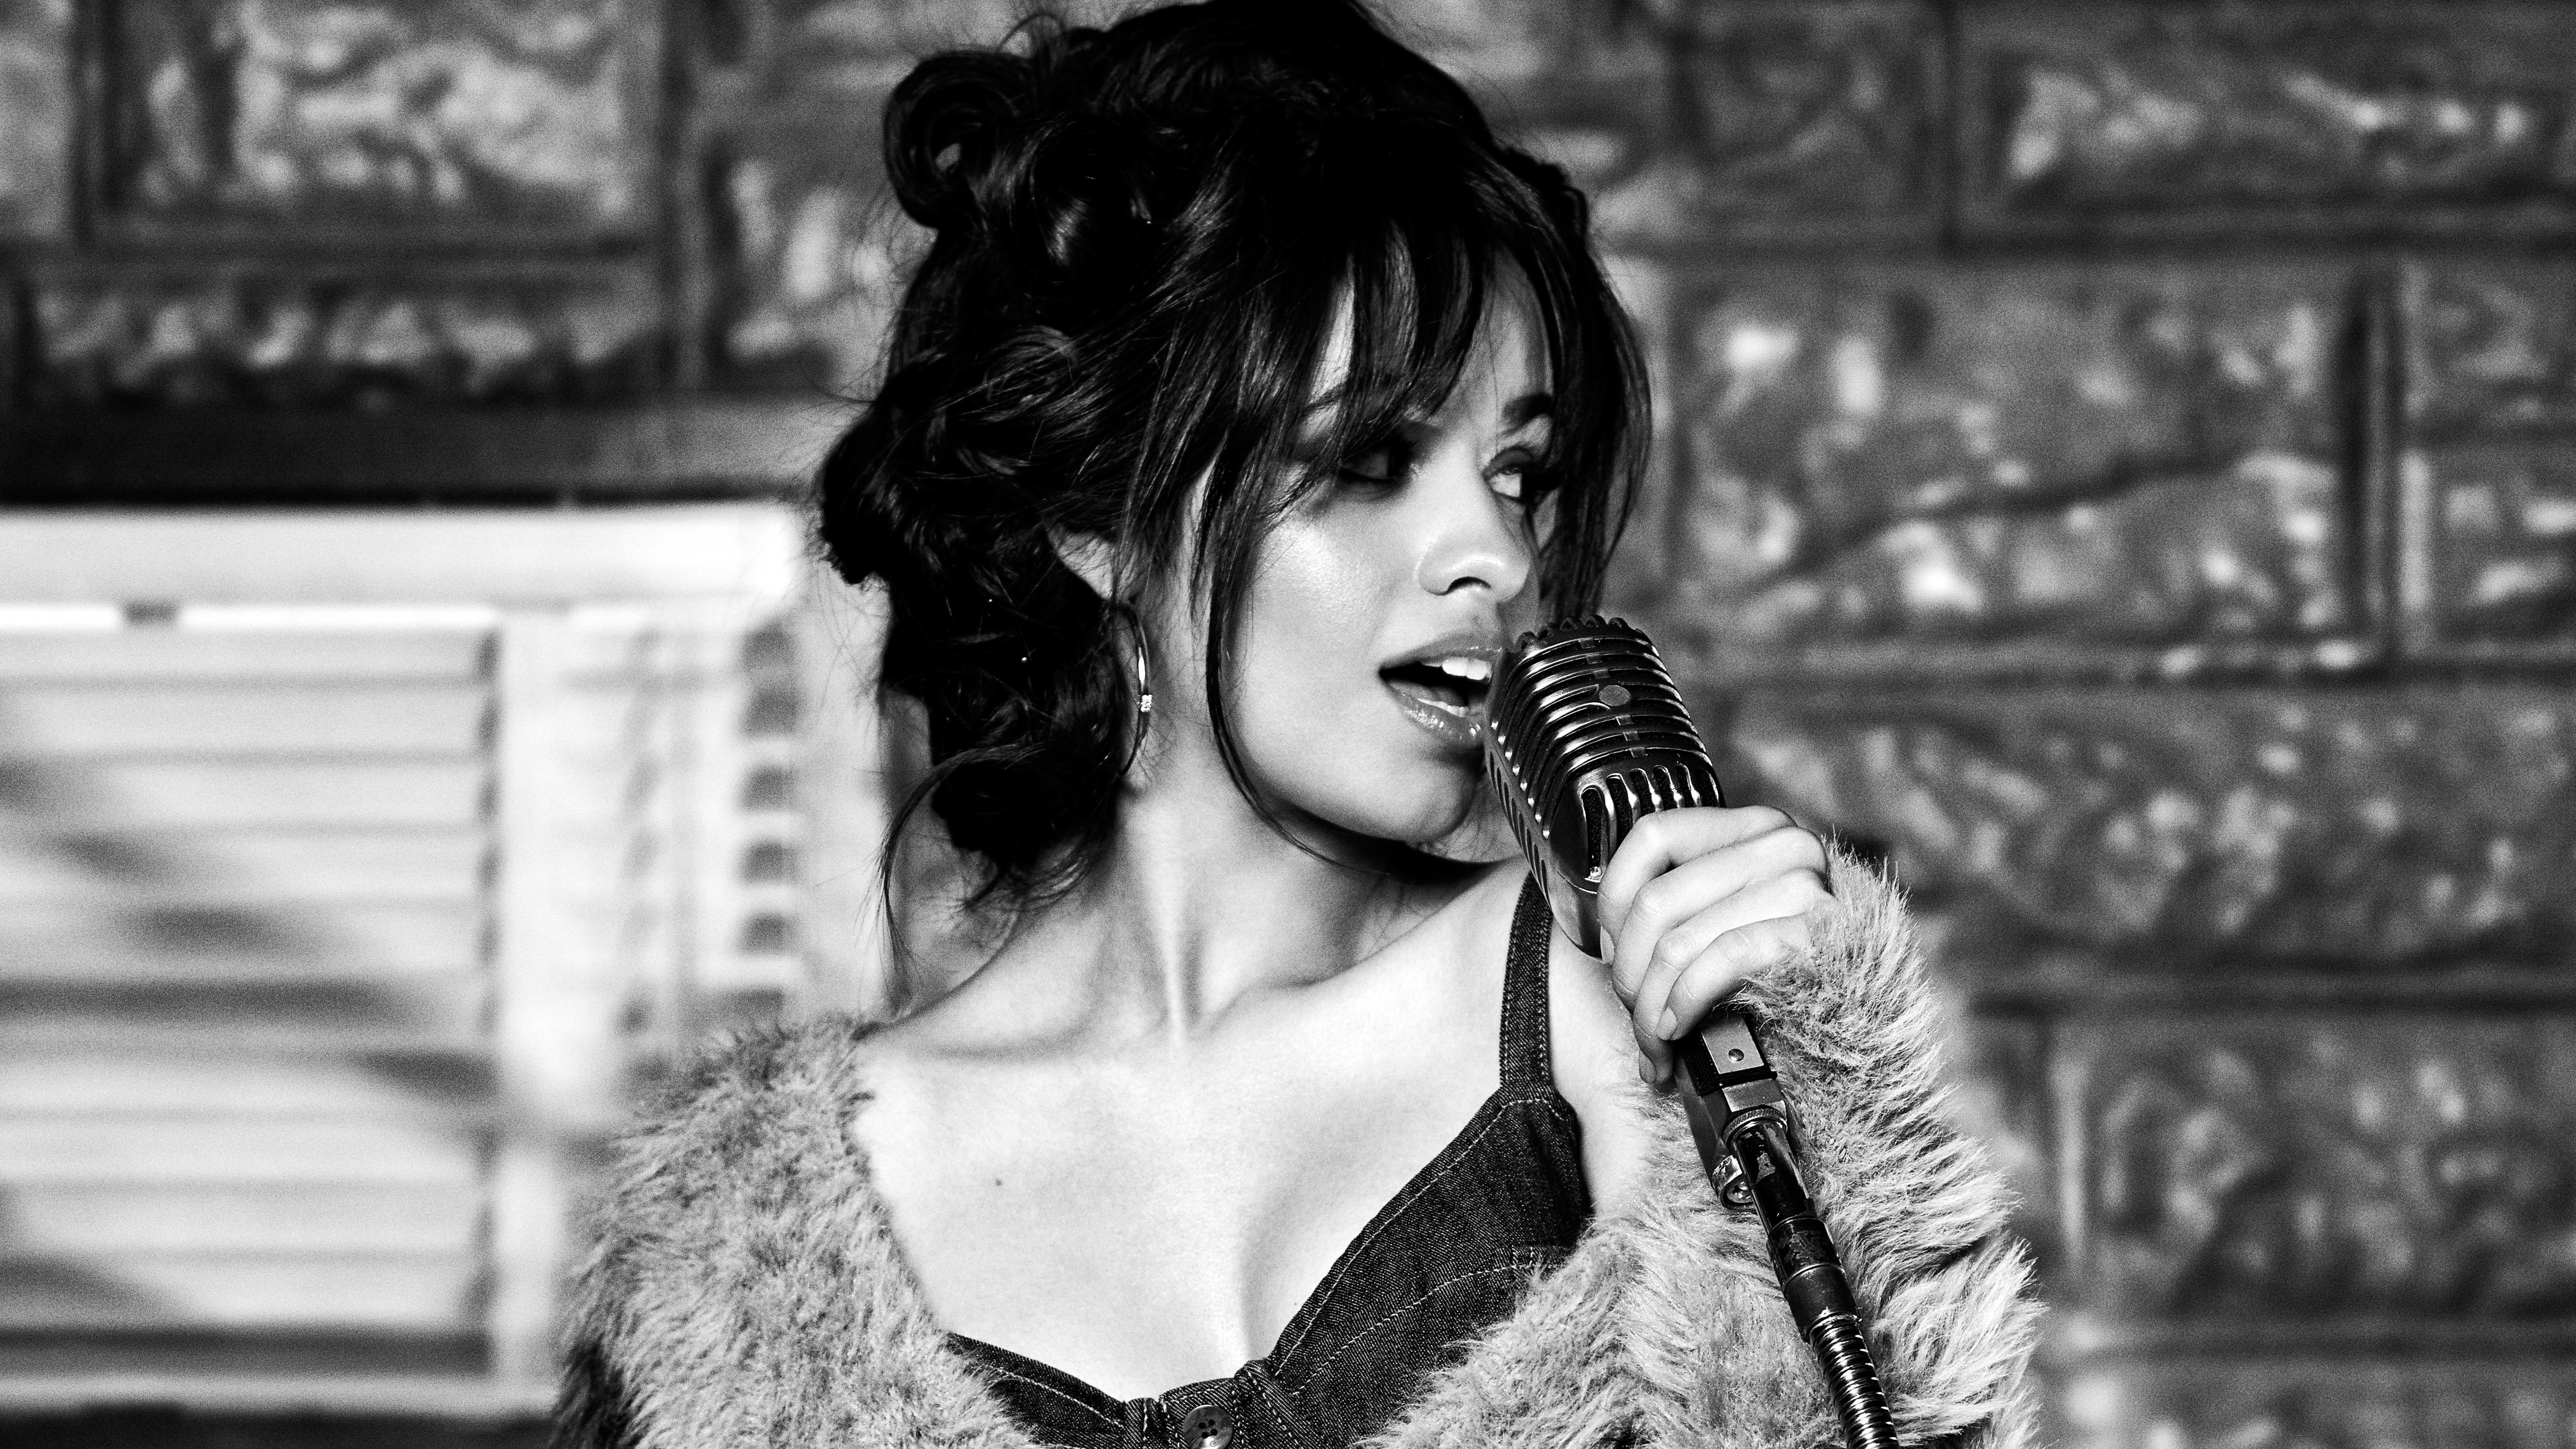 Music Camila Cabello HD Wallpaper | Background Image